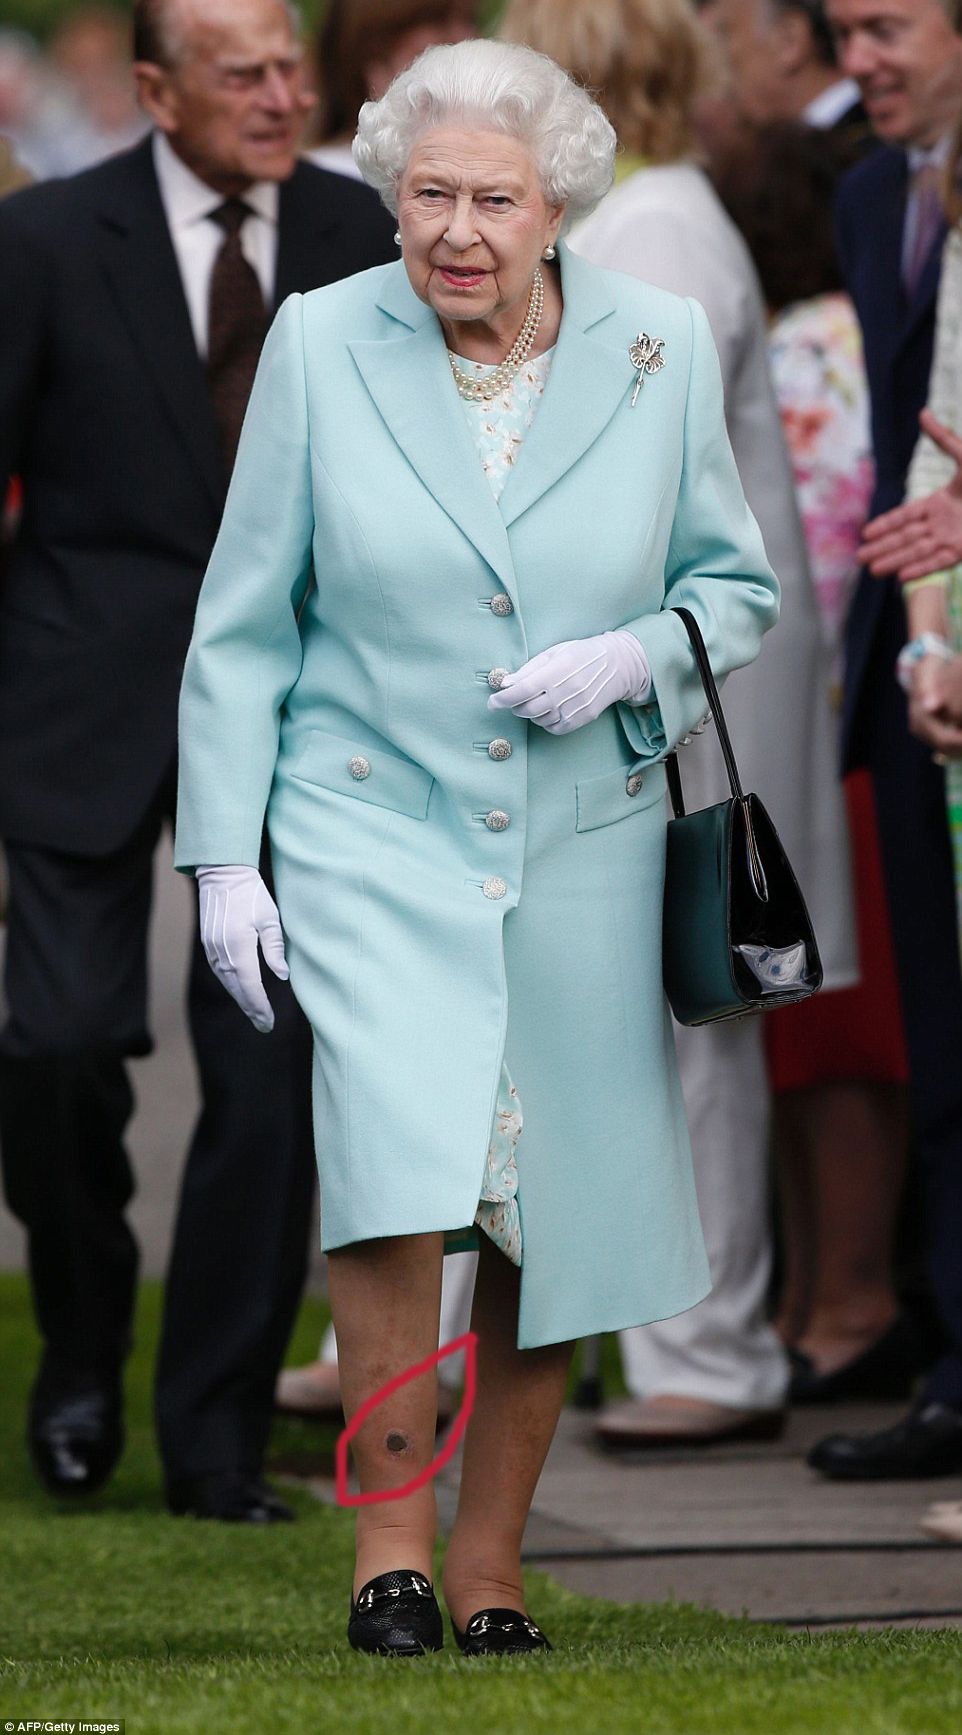 الملكة اليزابيث والحفرة السوداء في أسفل ساقها أمام كل المصورين الذين غطوا معرض الزهور في بريطانيا